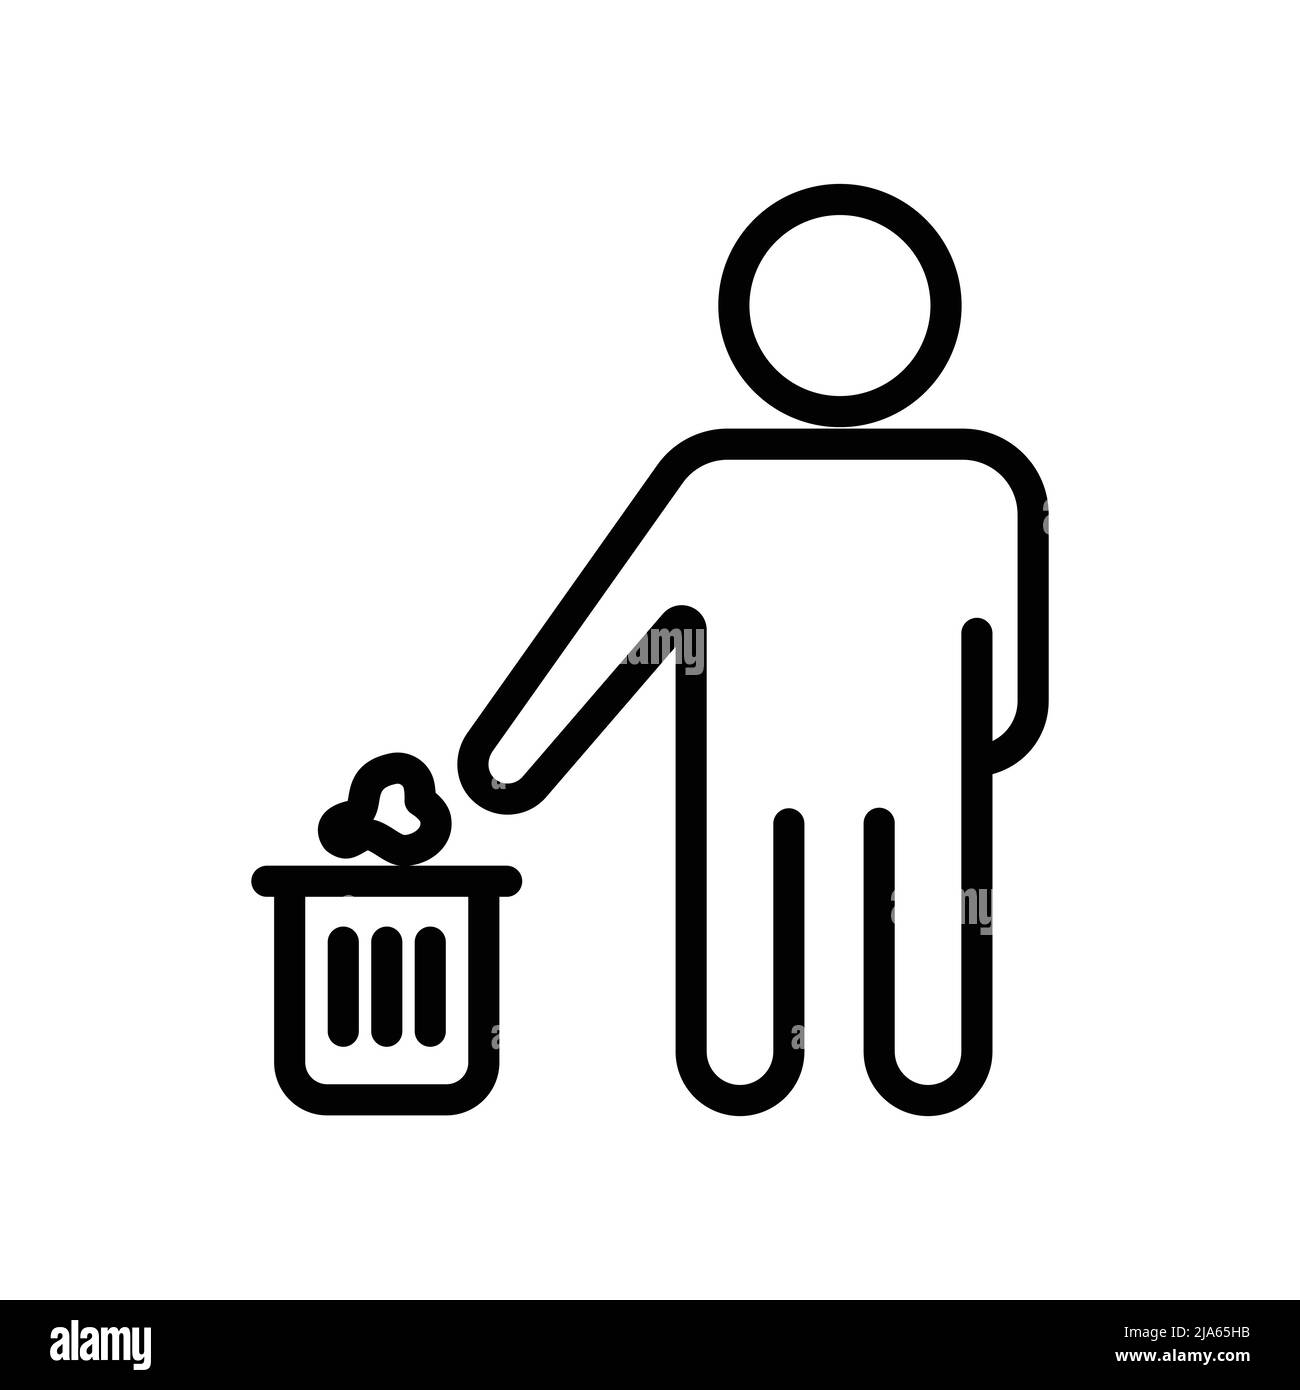 Symbolvektor für Papierkorb mit Personen. Werfen Müll in seinen Platz, Sauberkeit, Umwelt Sauberkeit, gesunde Umwelt. Line Icon Stil. Einfache de Stock Vektor